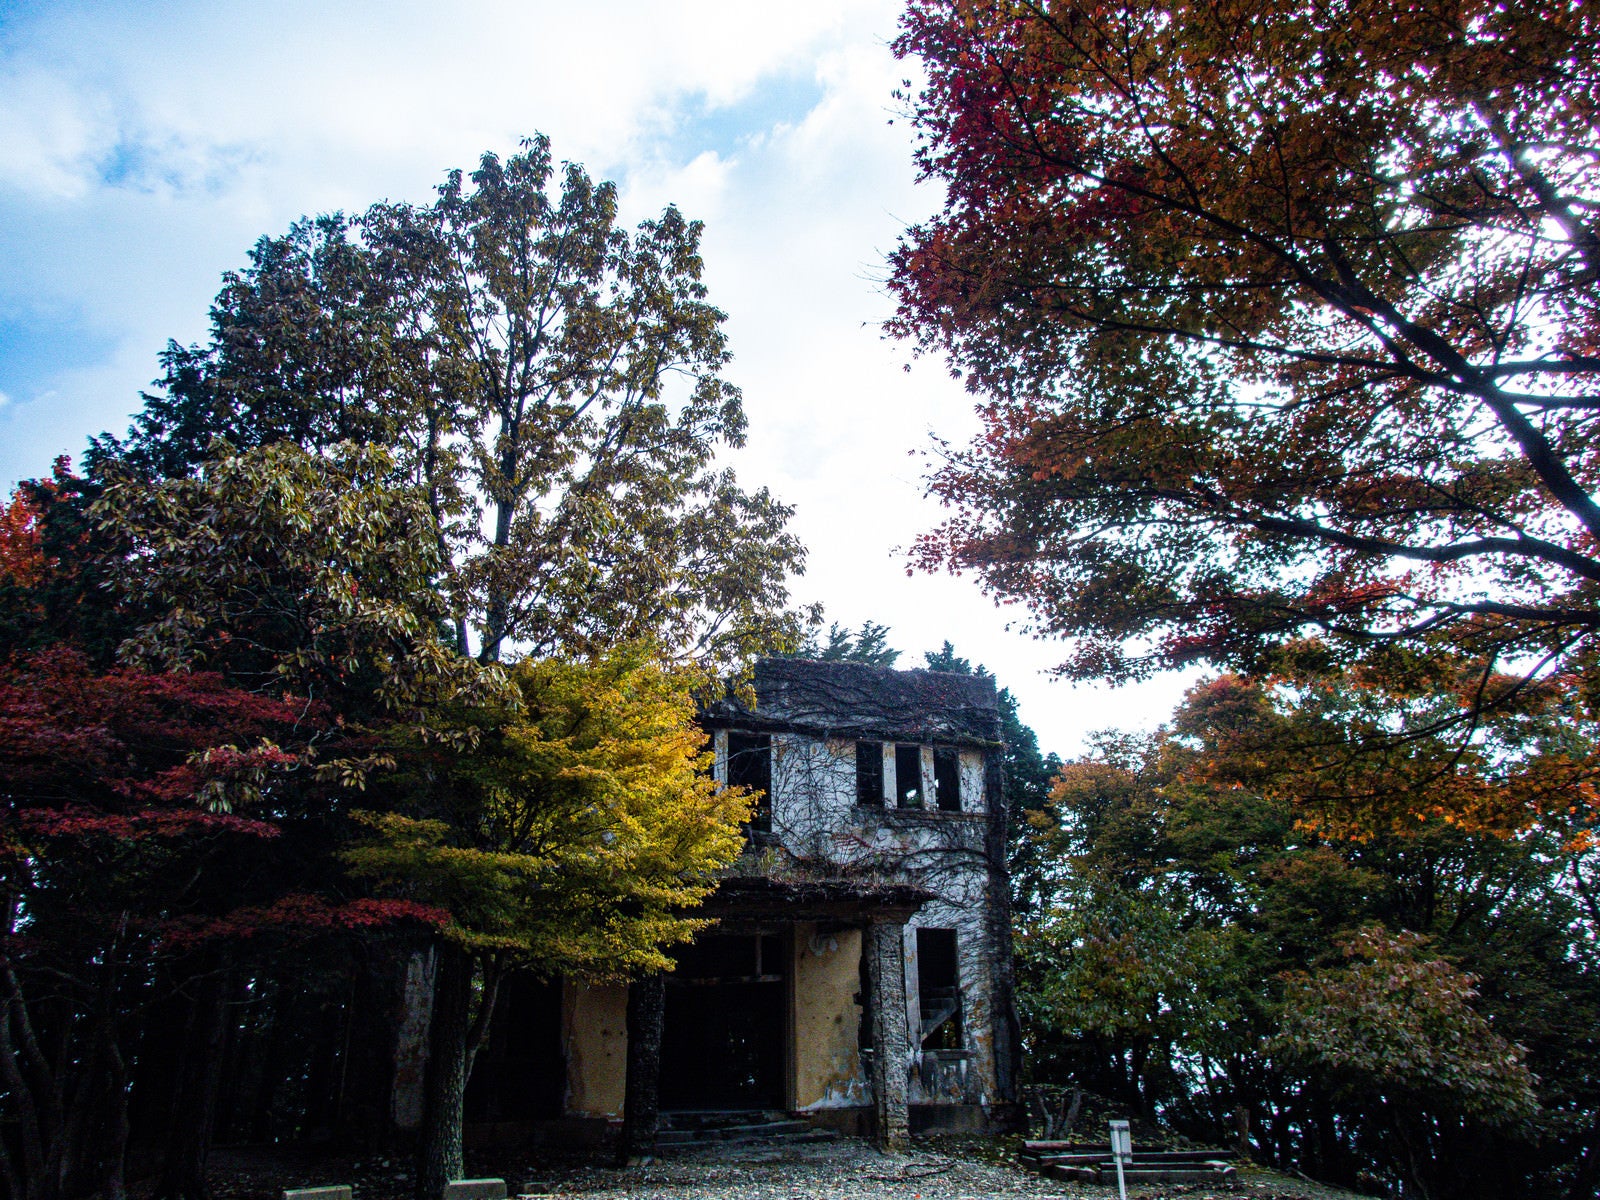 「ケーブルカー駅舎跡を取り囲む紅葉した木々」の写真